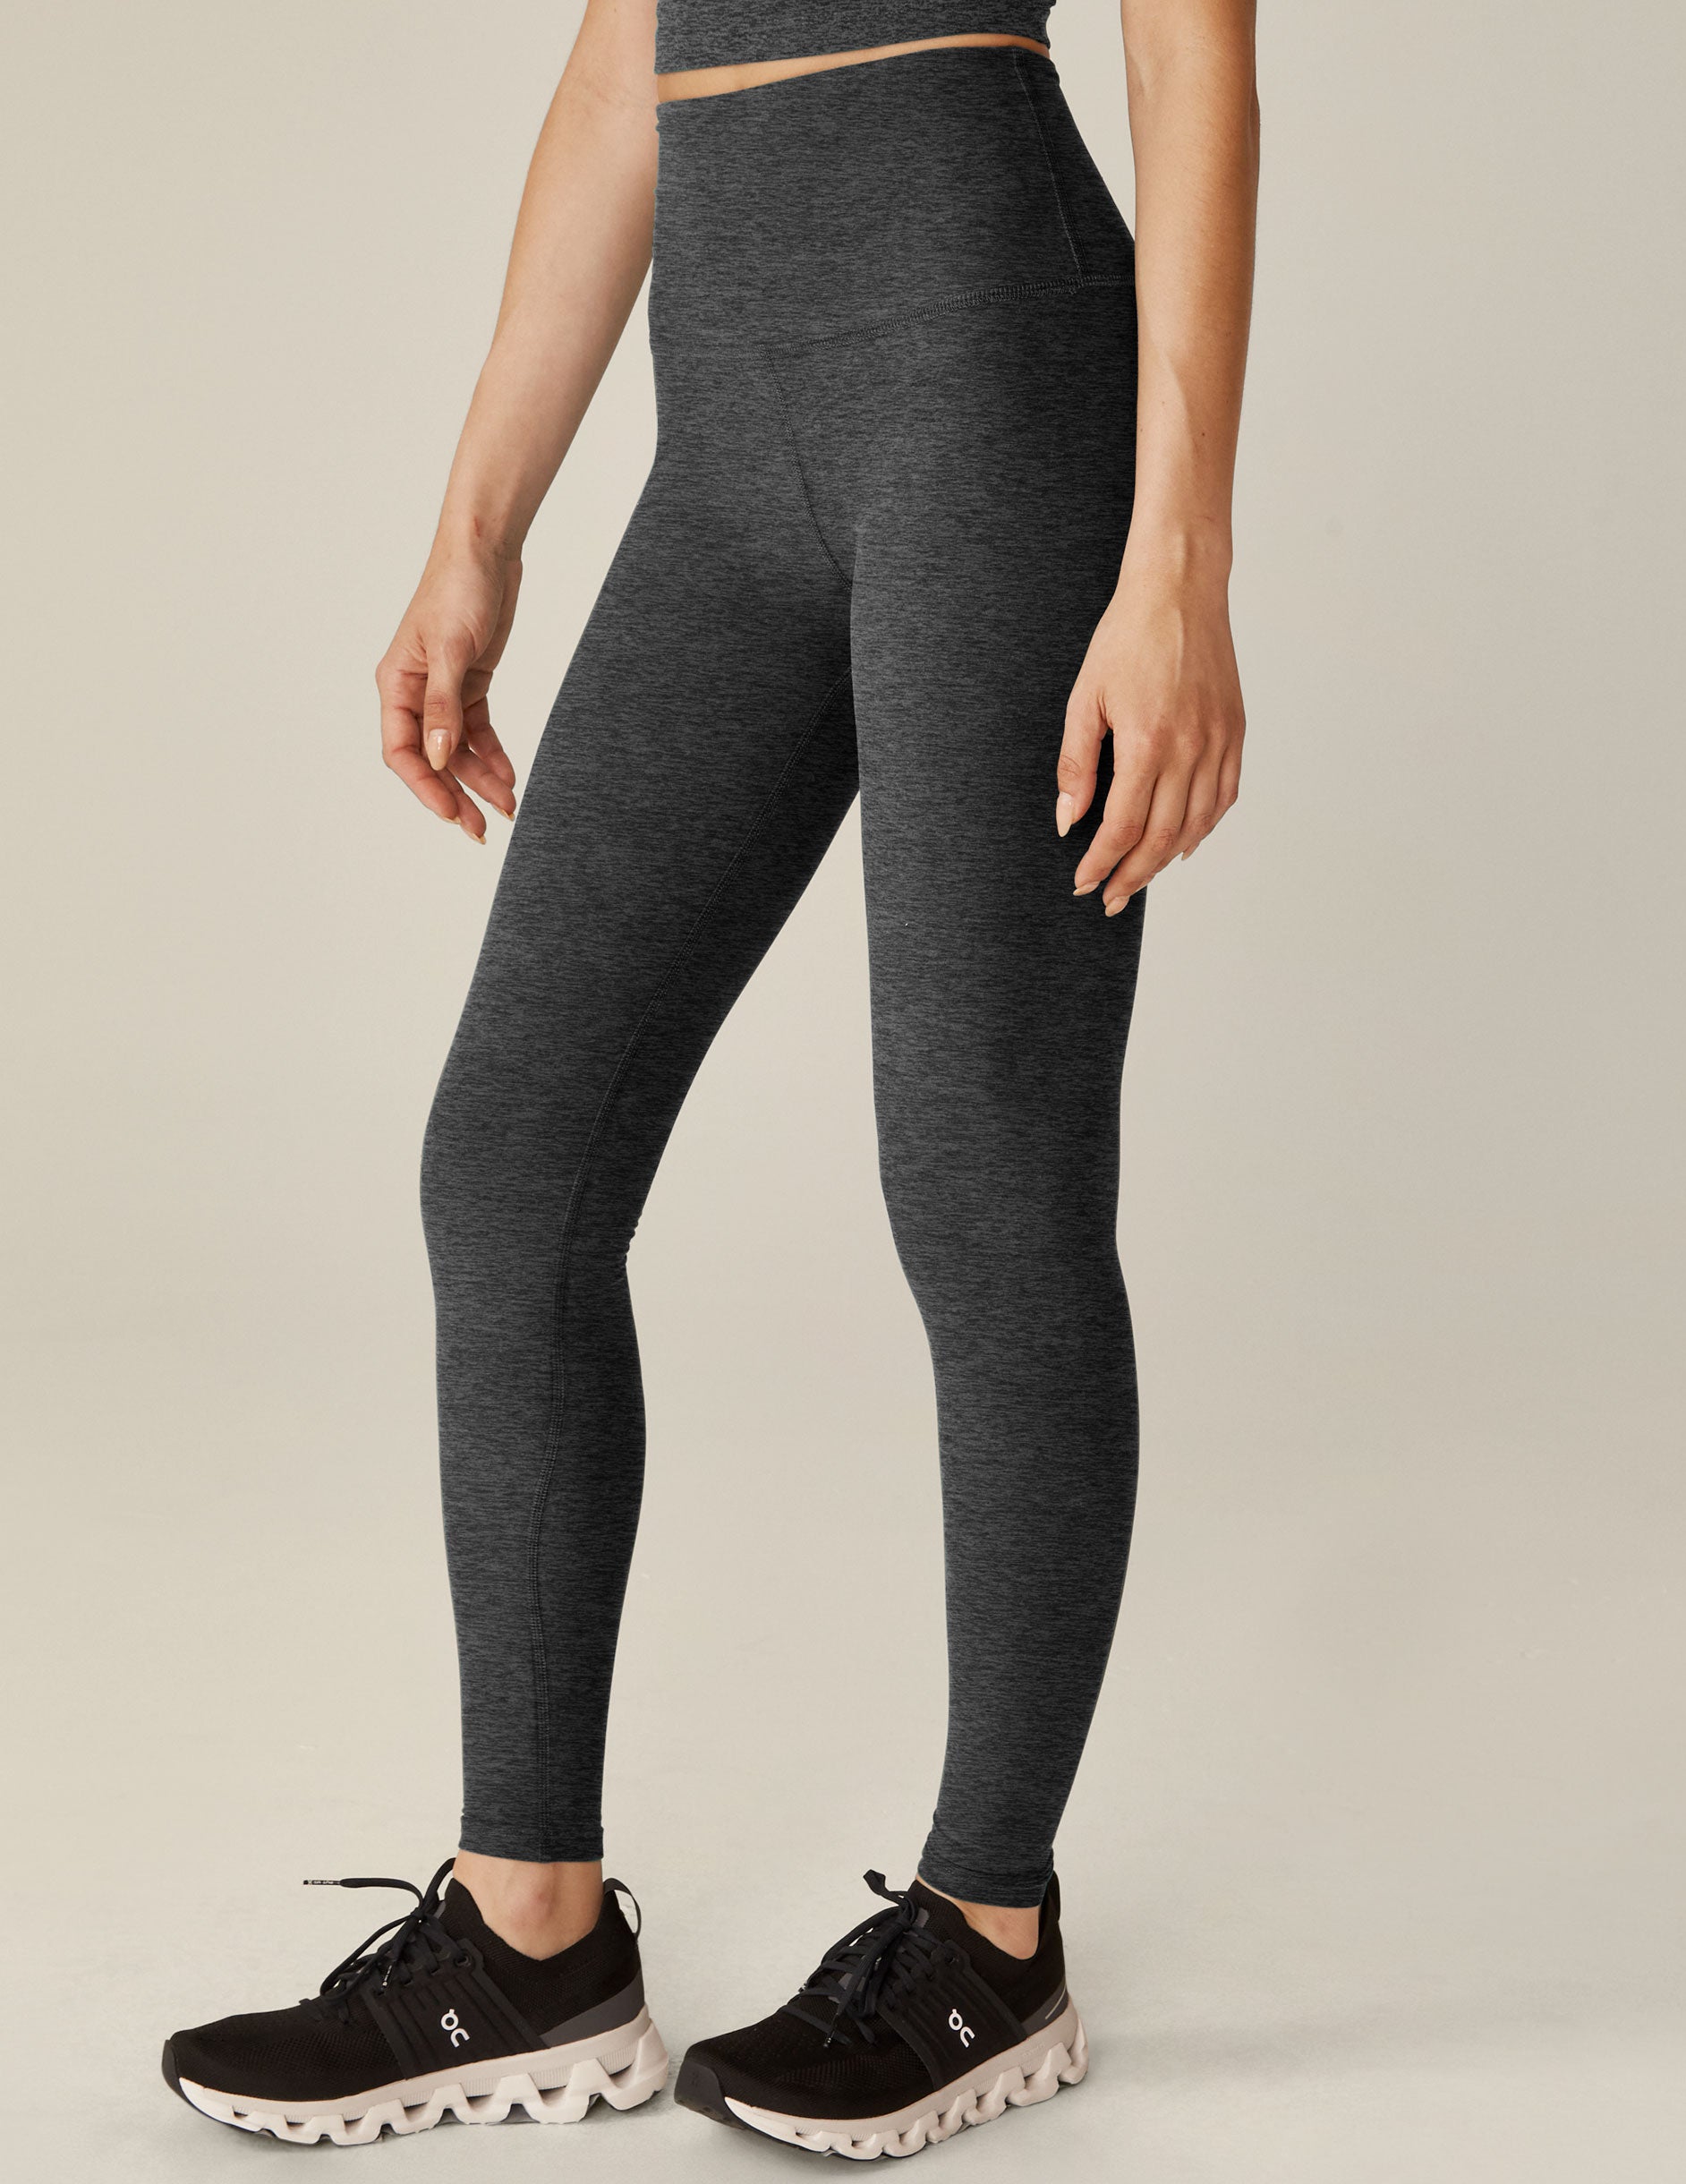 NWT Beyond Yoga Shimmer Essential Long Leggings - M, Black/Silver